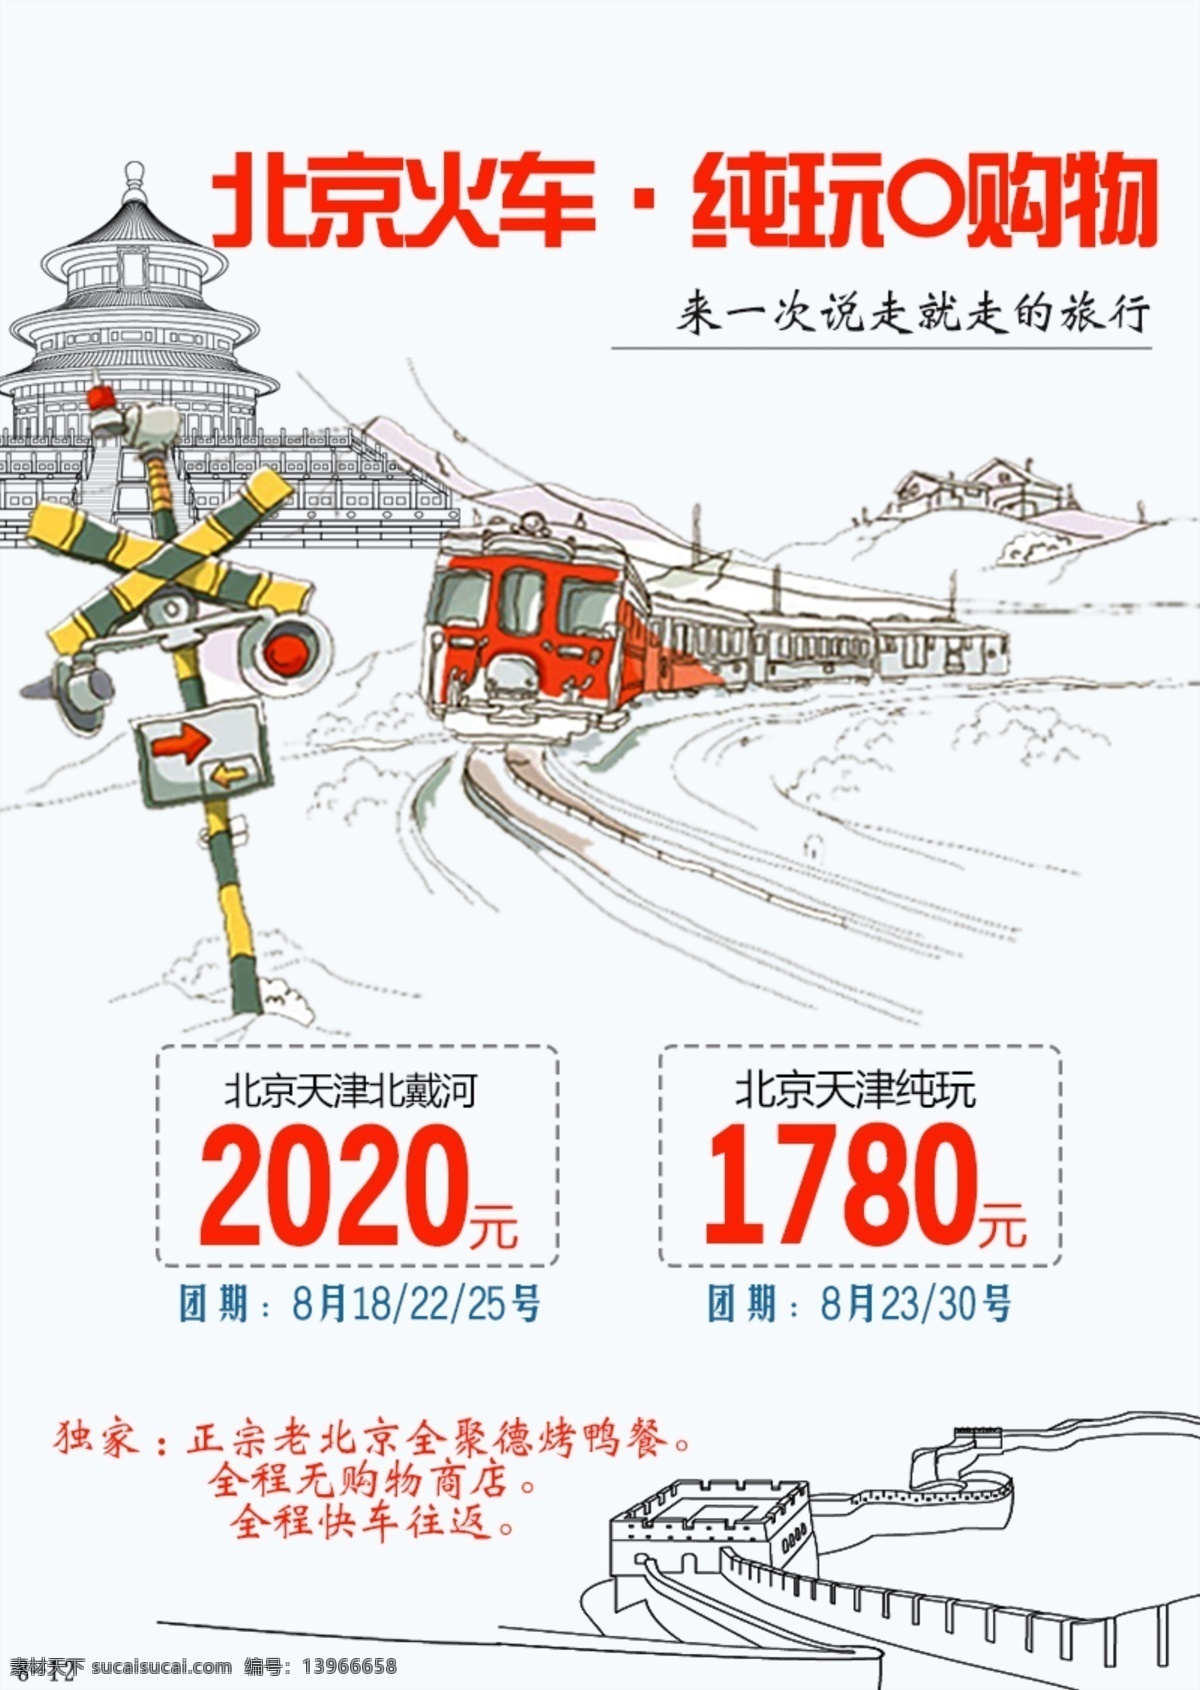 卡通 火车 北京 旅游 海报 长城 故宫 红色 红绿灯